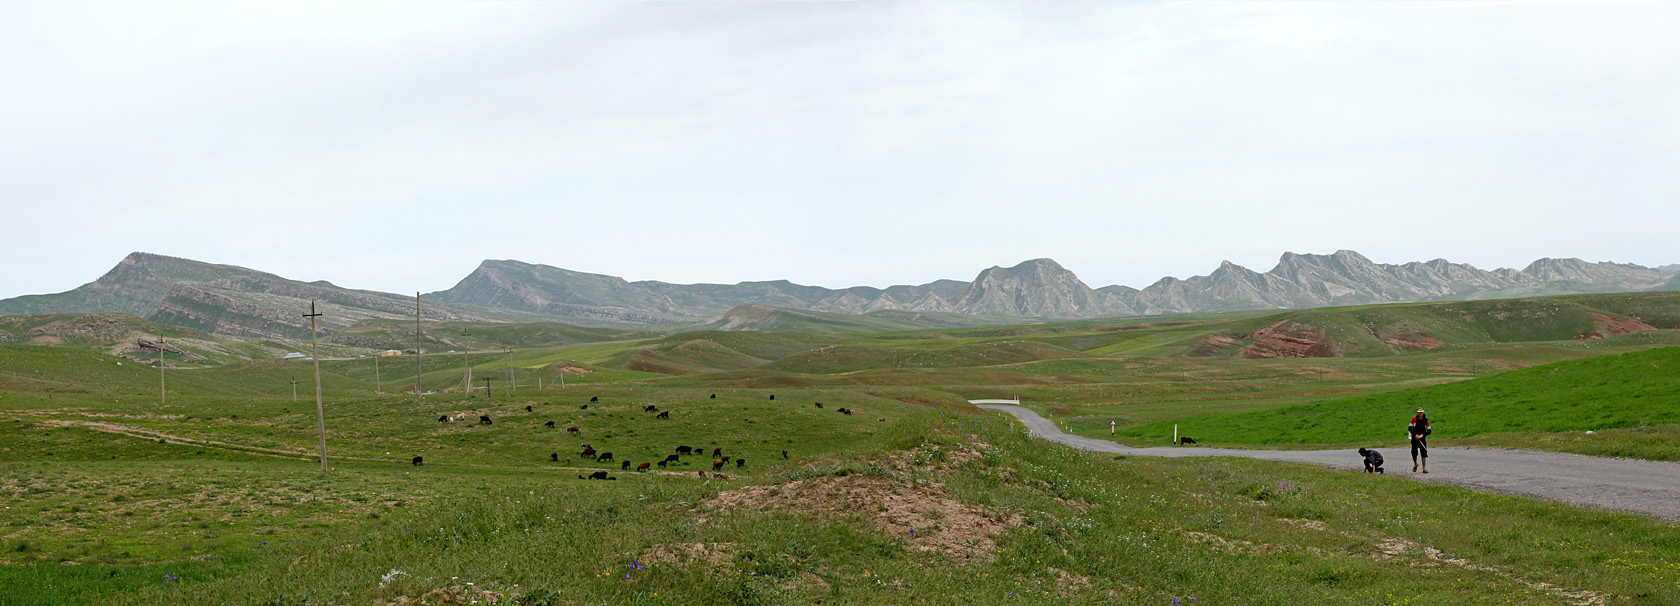 Окрестности селения Даштигаз, изображение ландшафта.